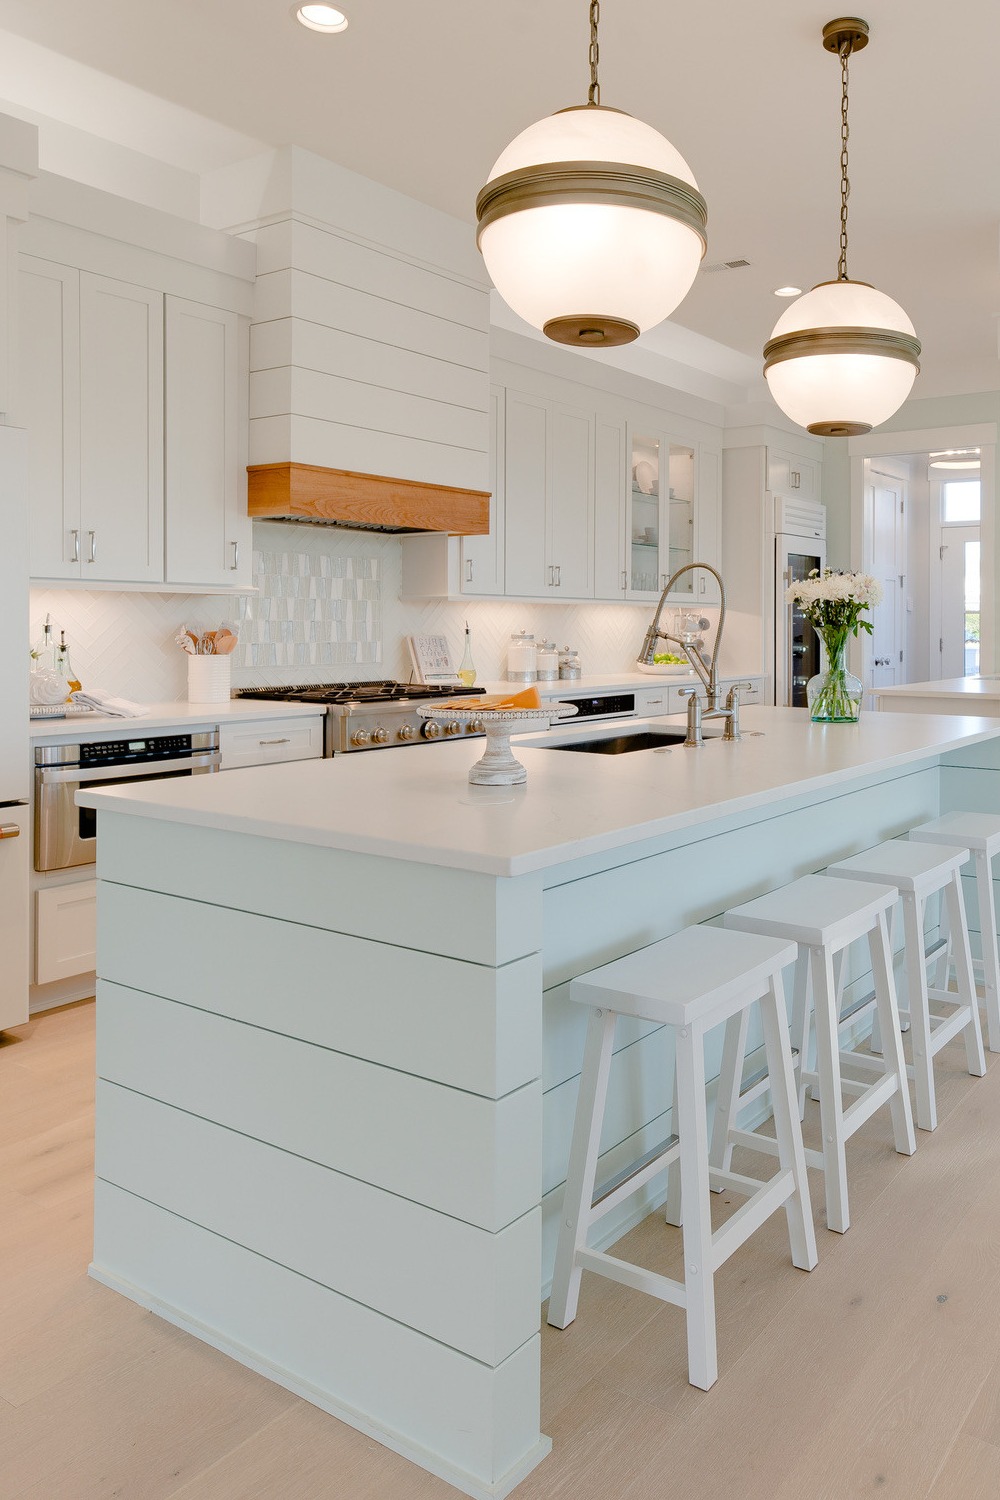 White Glass Tile Backsplash White Appliances Light Hardwood Flooring Quartz Counters Cabinetry Pendant Lights